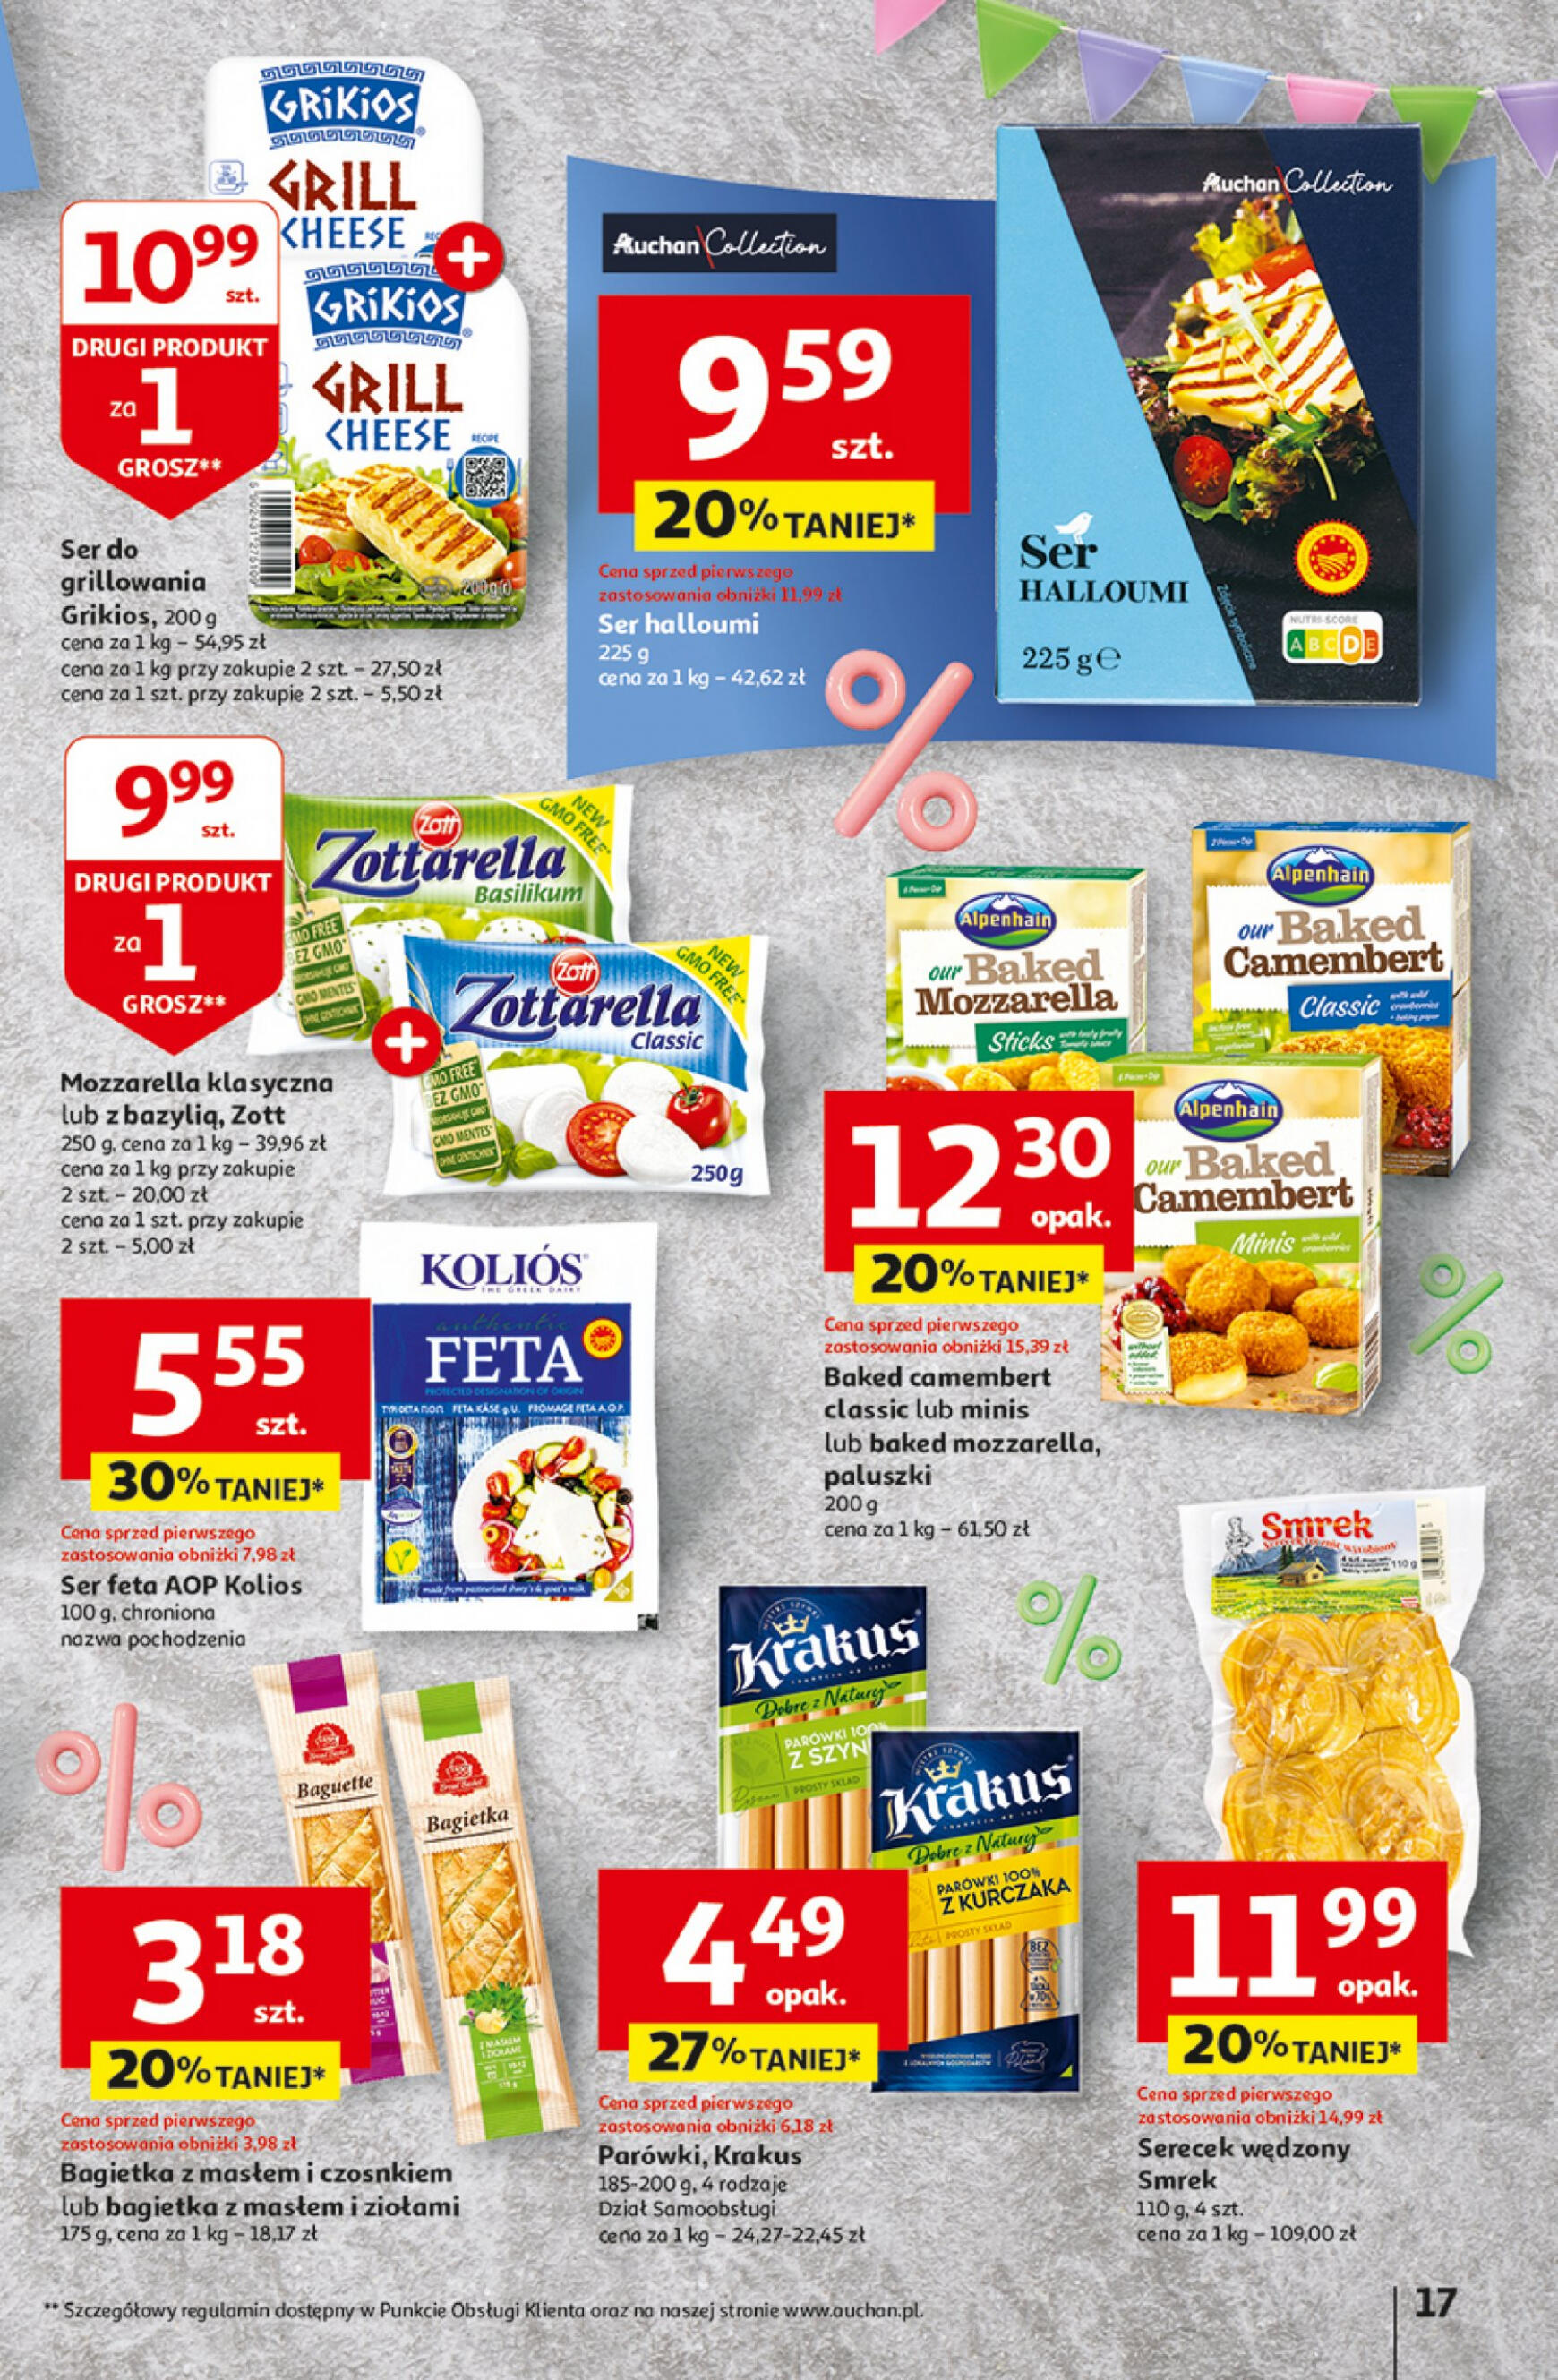 auchan - Hipermarket Auchan - Gazetka Jeszcze taniej na urodziny gazetka aktualna ważna od 25.04. - 30.04. - page: 17